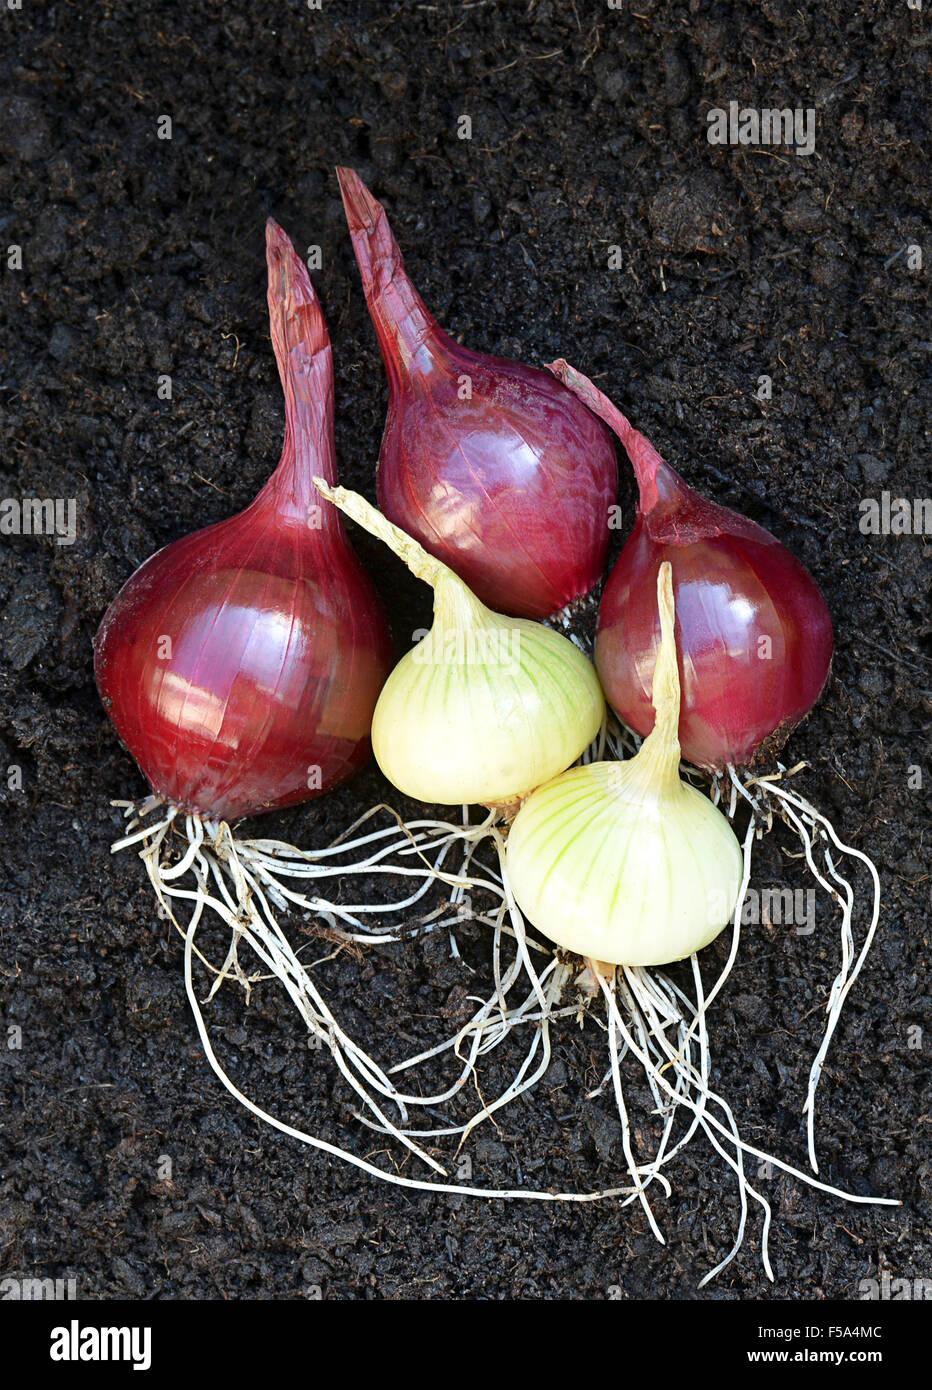 Frisch aus dem Boden organische Schalotten Teil der Zwiebel Familie legen auf reichen dunklen Boden mit Birne und Wurzeln. Stockfoto